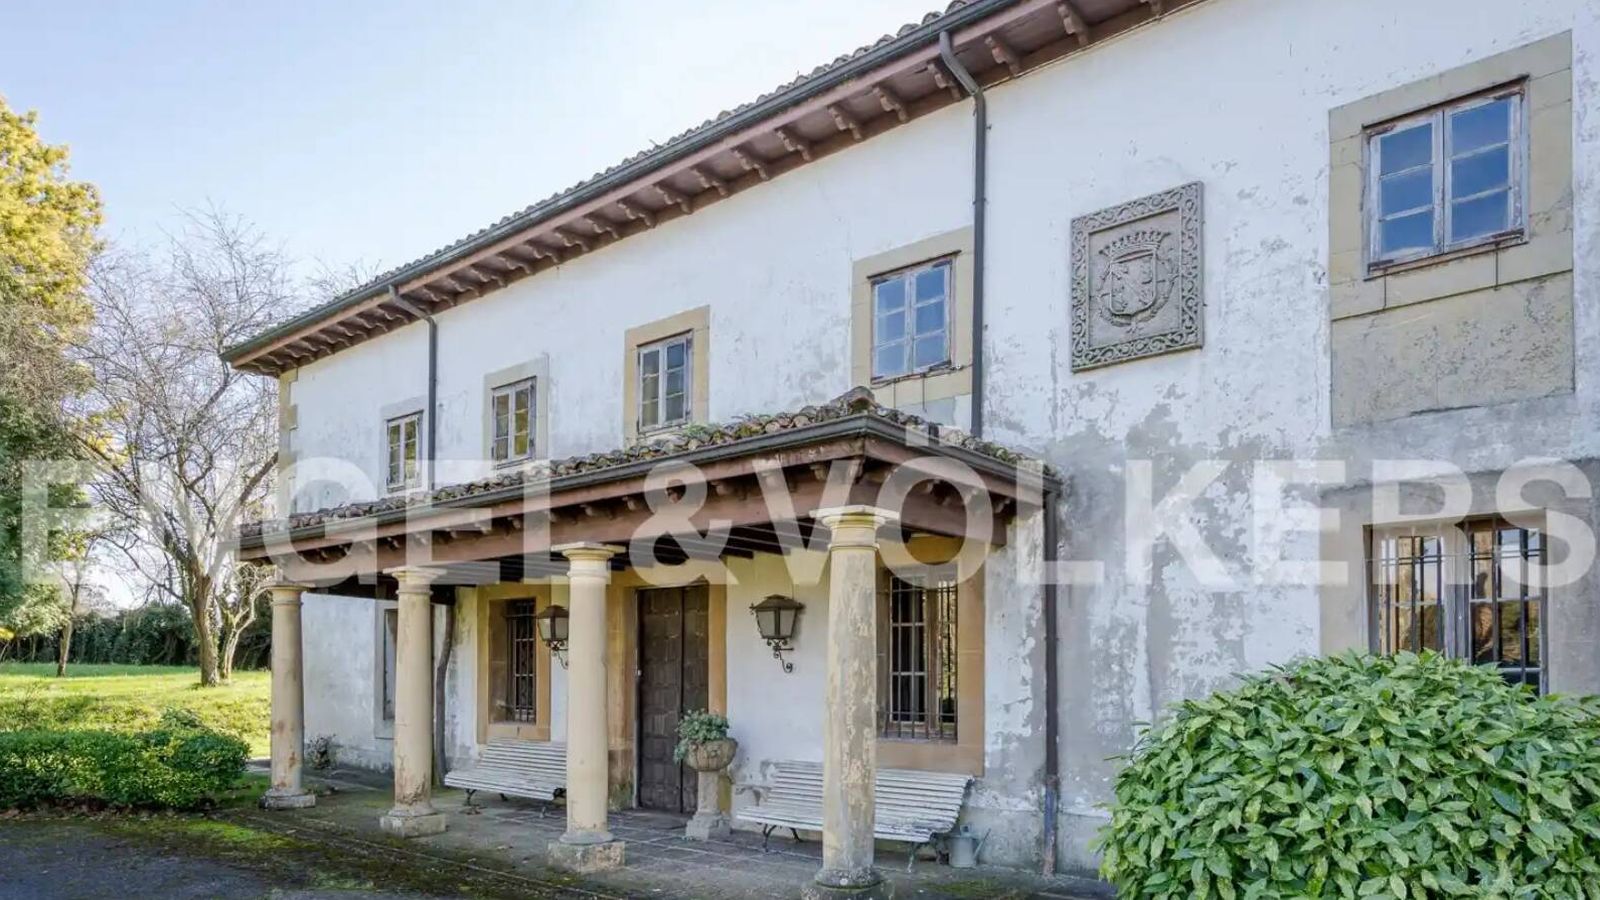 La casa de Asturias de la familia Franco, rebajada. (Cortesía/Engel & Völkers)